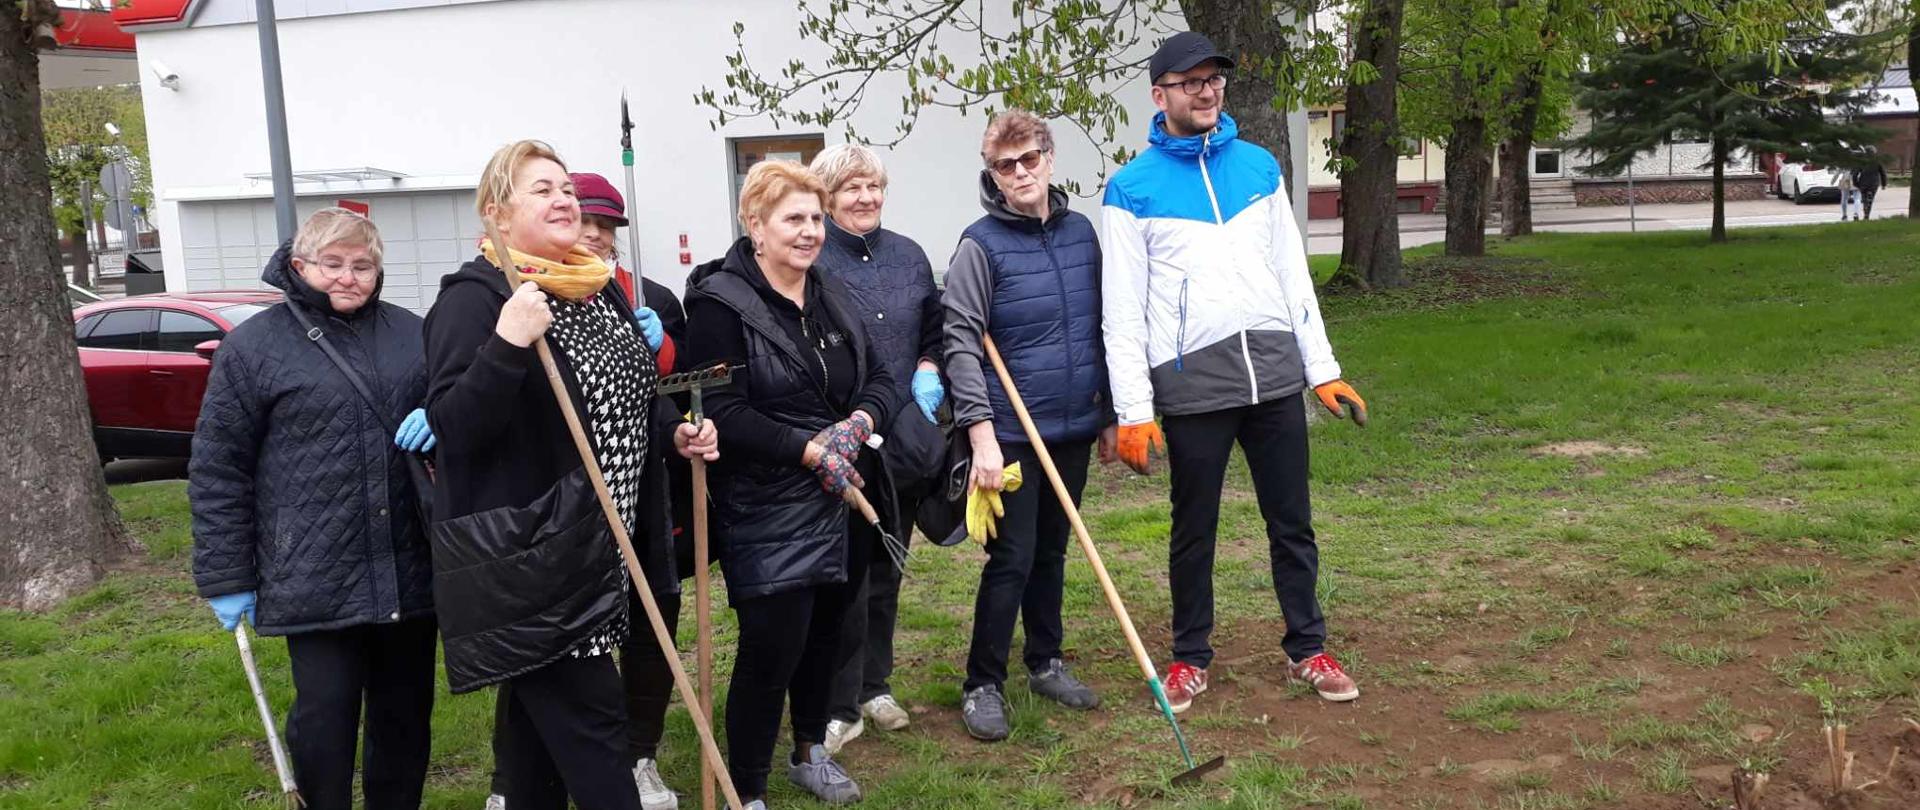 Uczestnicy Klubu Senior+ wraz z Burmistrzem Dąbrowy Białostockiej pozują do zdjęcia w parku miejskim, w rękach trzymają narzędzia ogrodnicze 